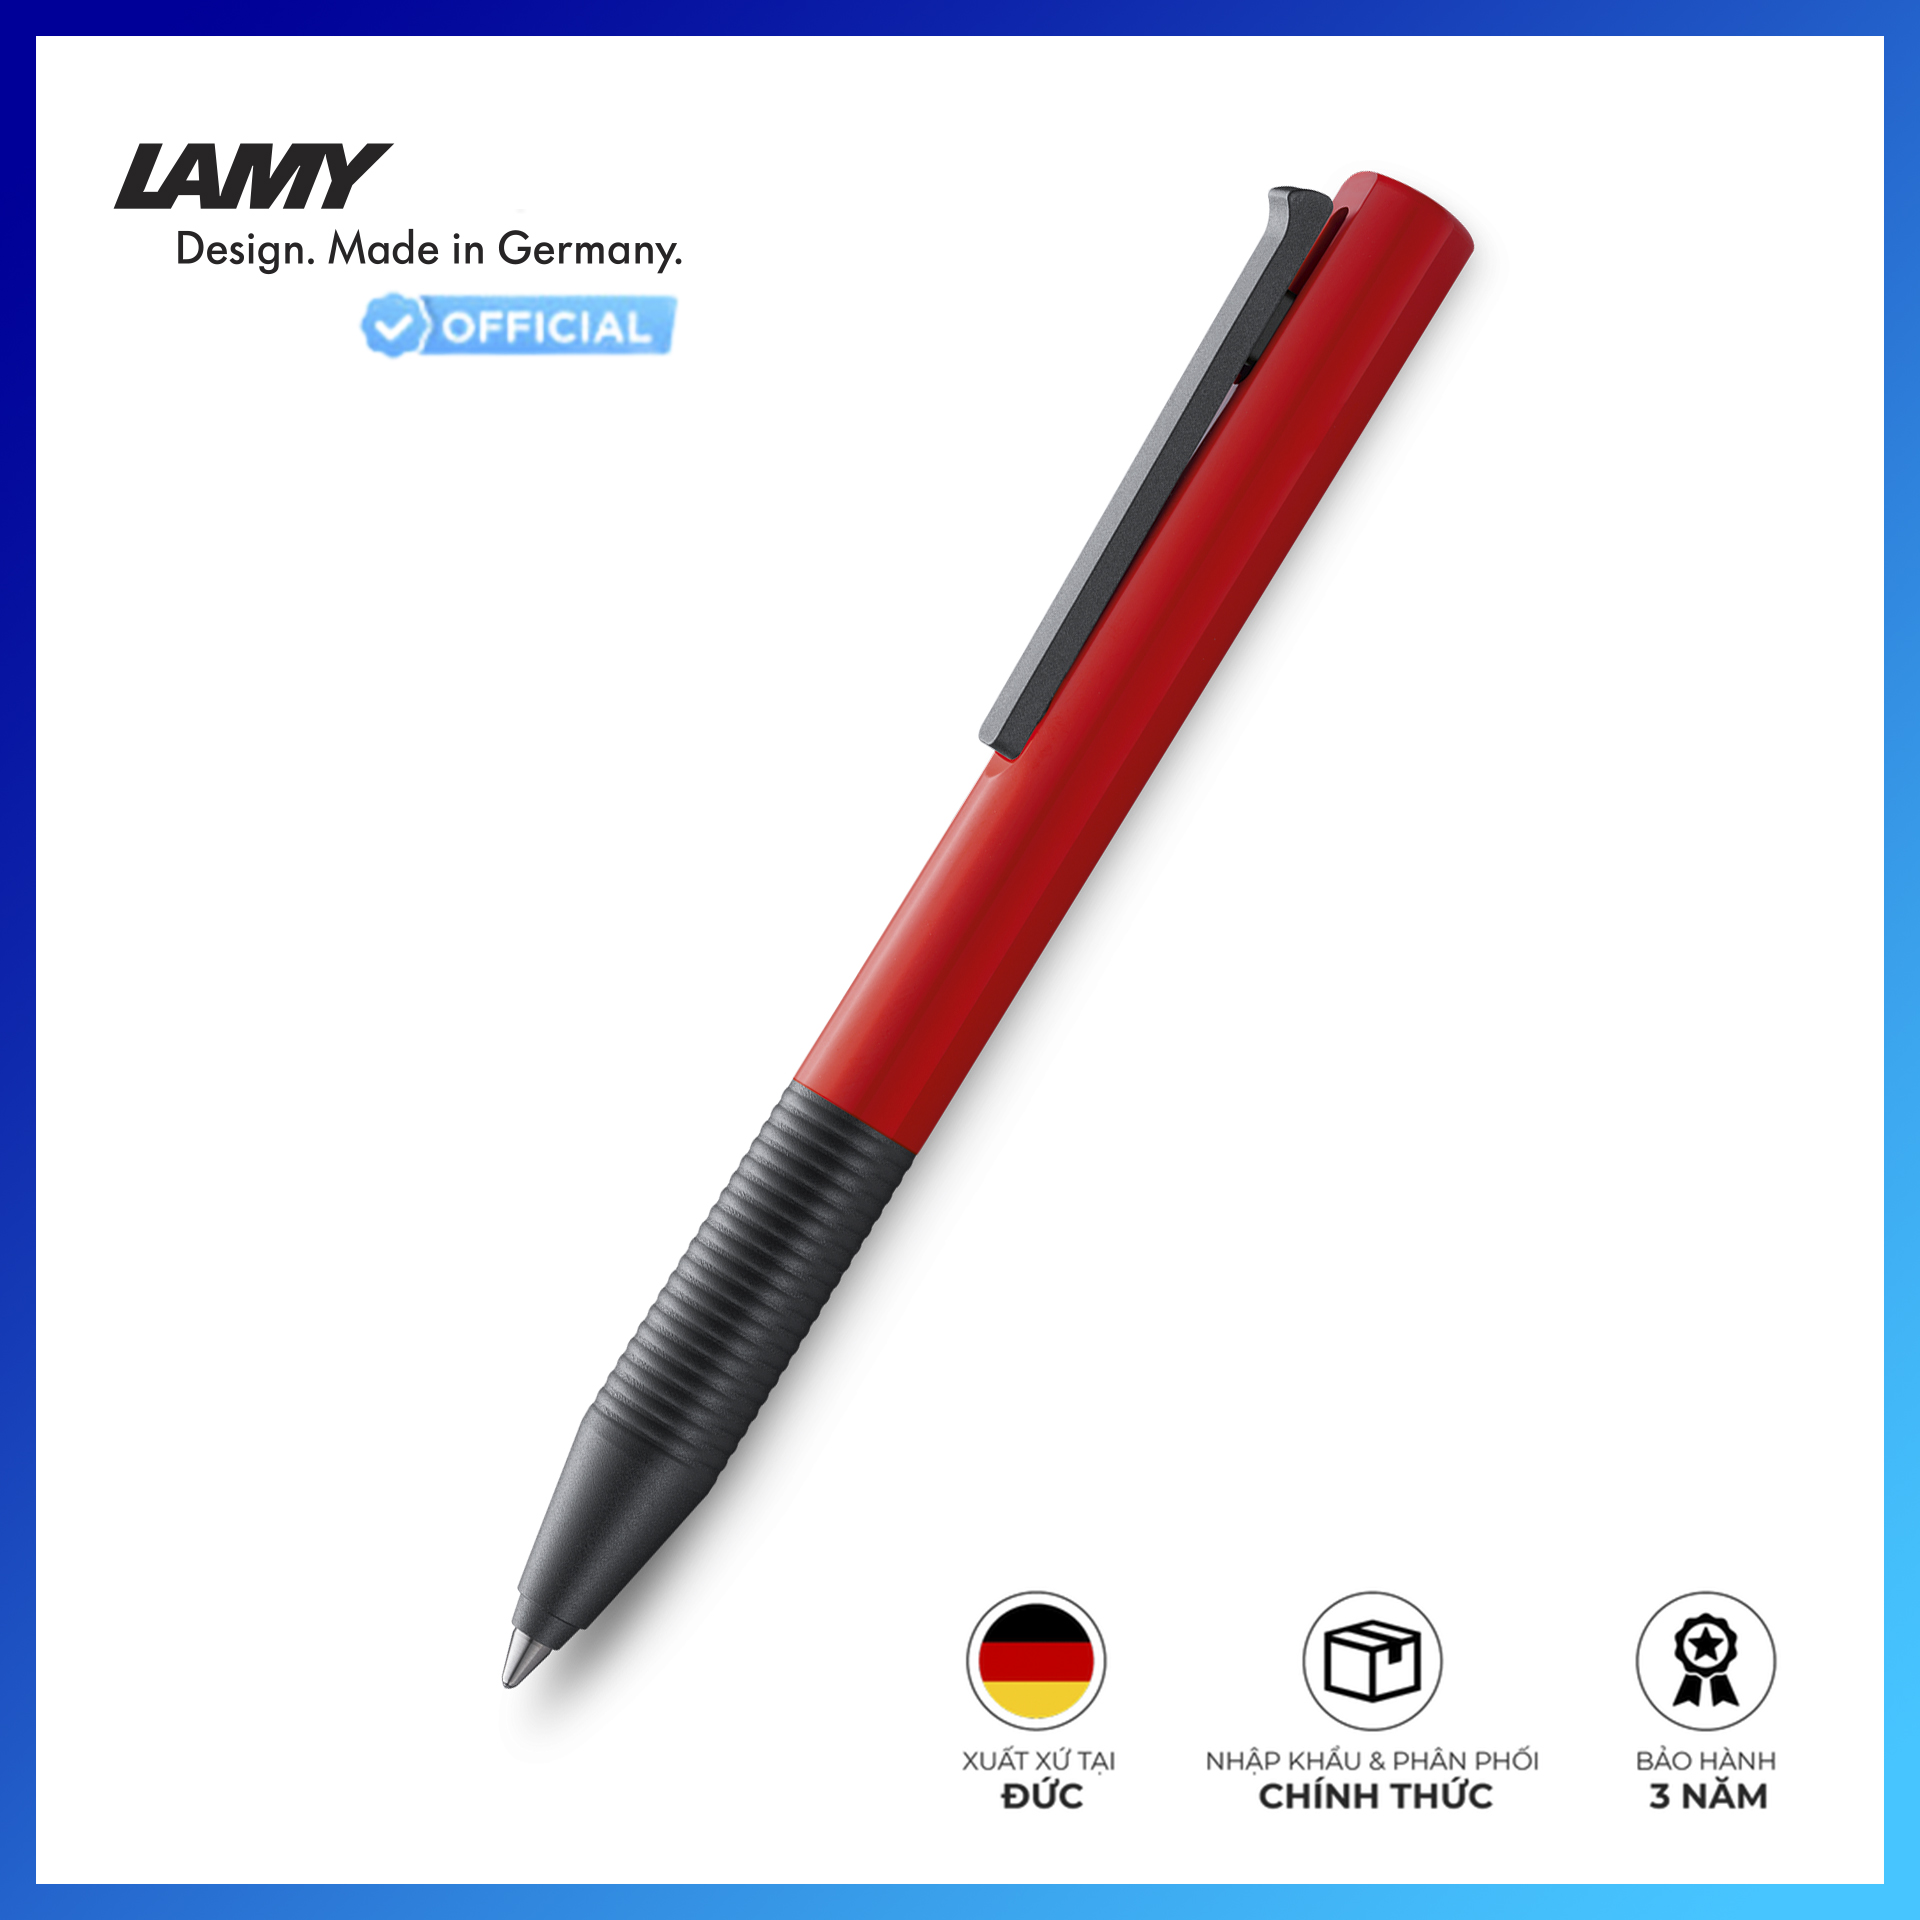 Bút Bi Lamy Tipo K Red (New Version) - 4030939